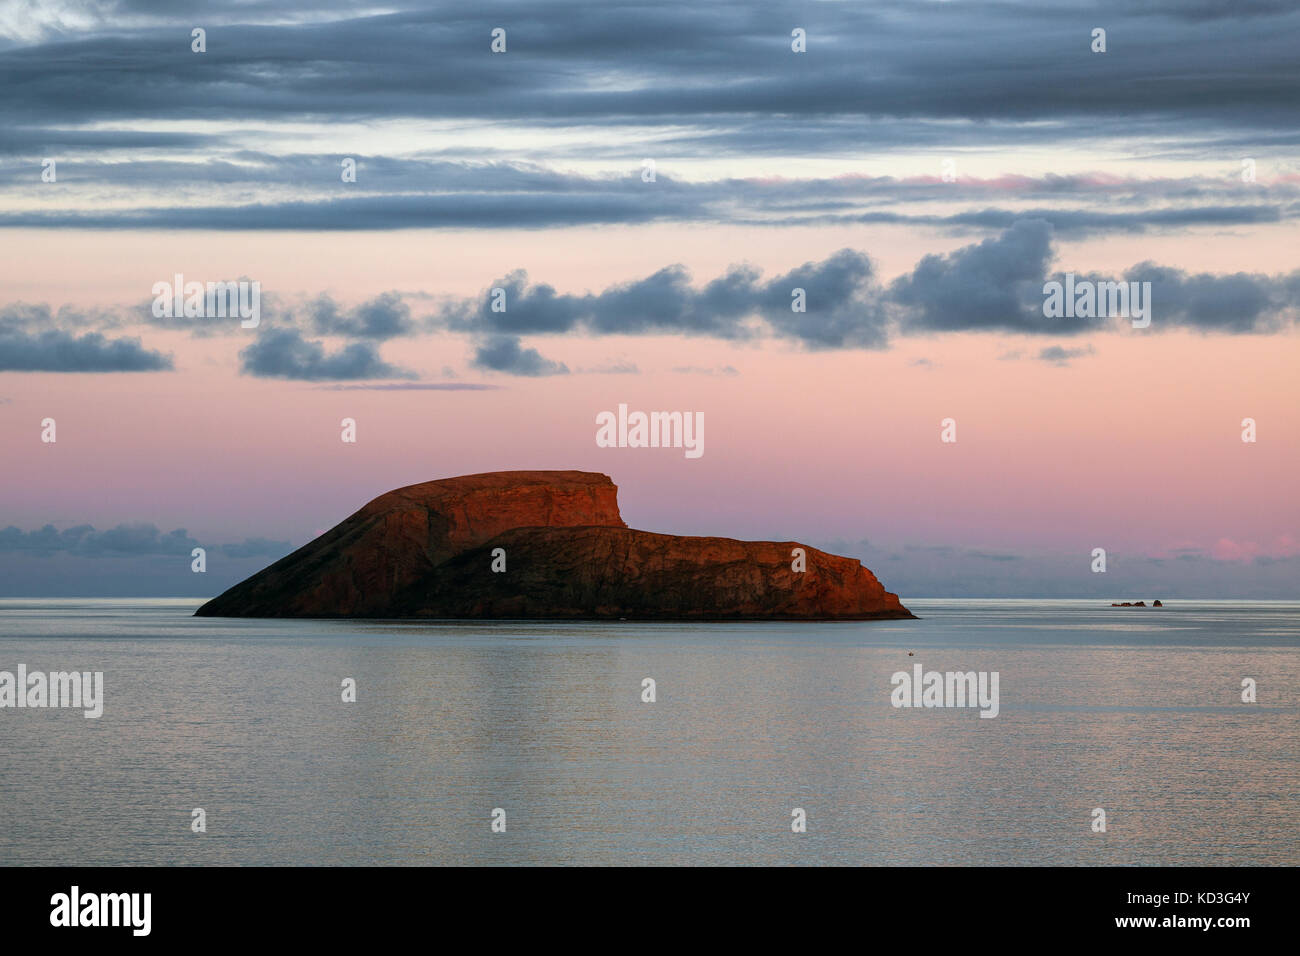 Petite île dans la mer en face d'Angra do Heroismo, coucher de soleil, lumière du soir, île de Terceira, Açores, Portugal Banque D'Images